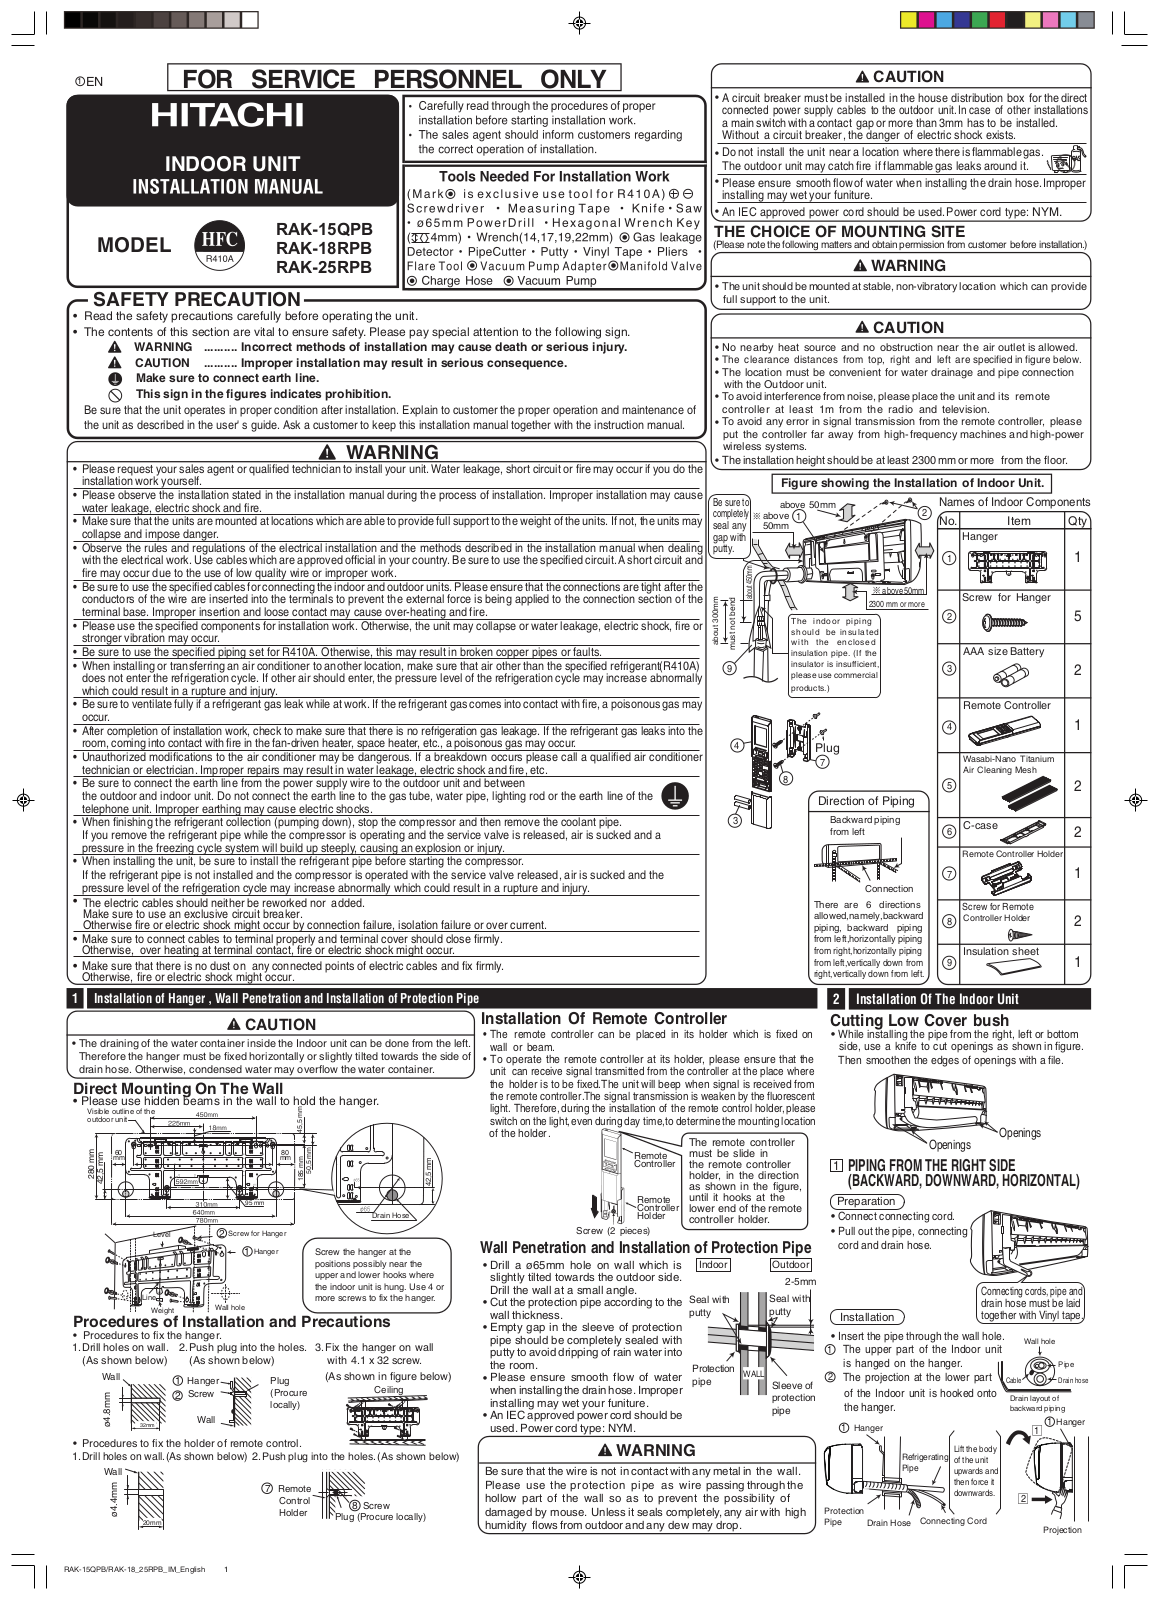 Hitachi RAK-15QPB, RAK-18RPB, RAK-25RPB Installation manual